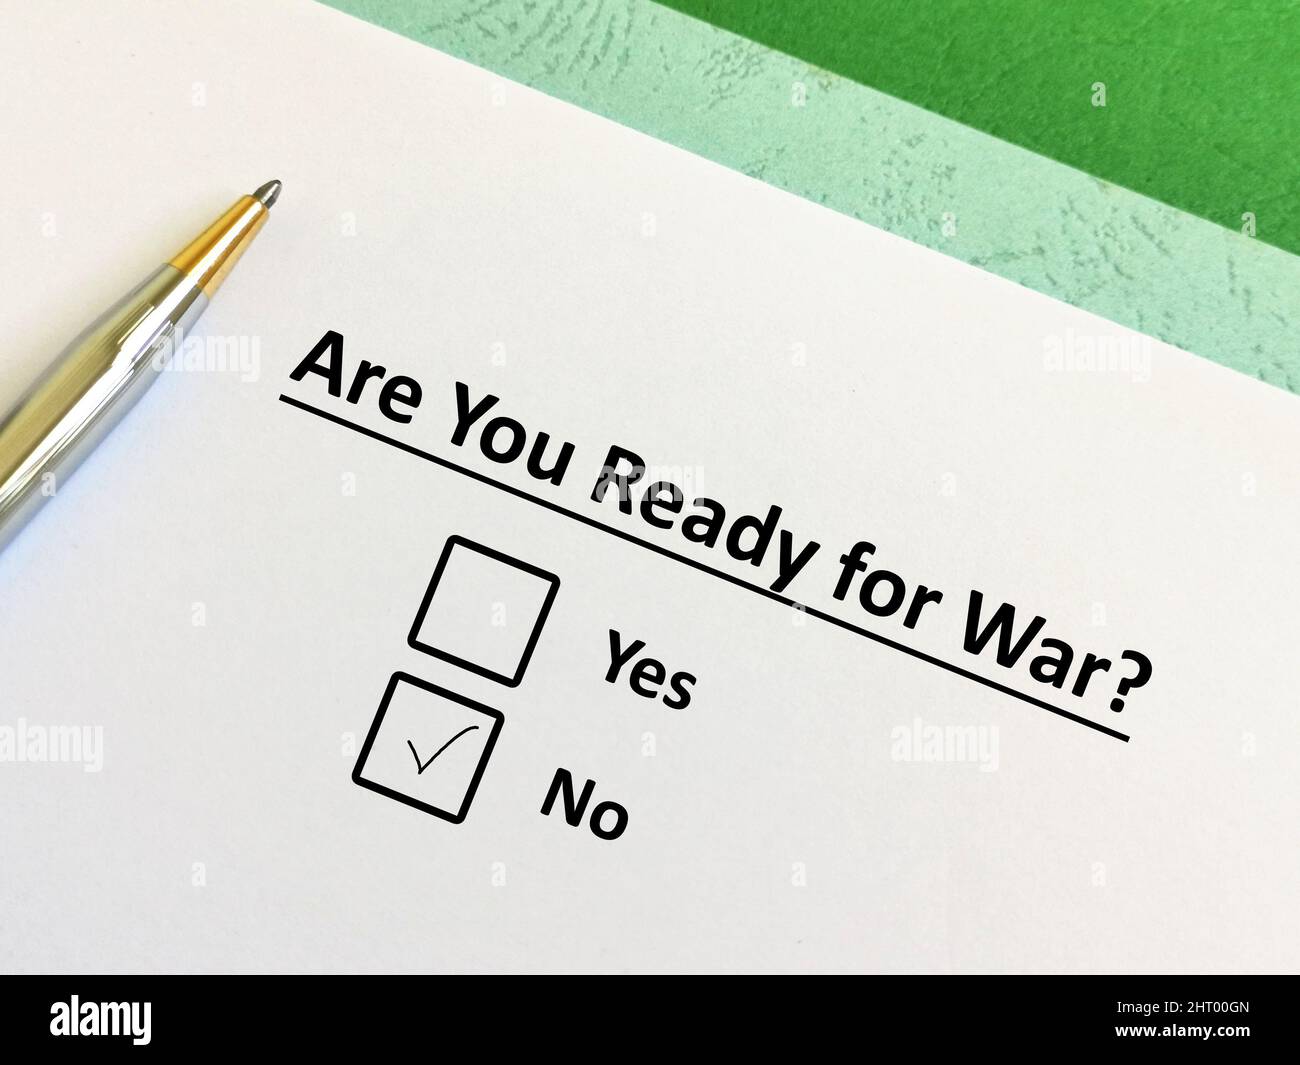 Una persona sta rispondendo alla domanda sul conflitto e la guerra. La persona pensa che non è pronto per la guerra. Foto Stock